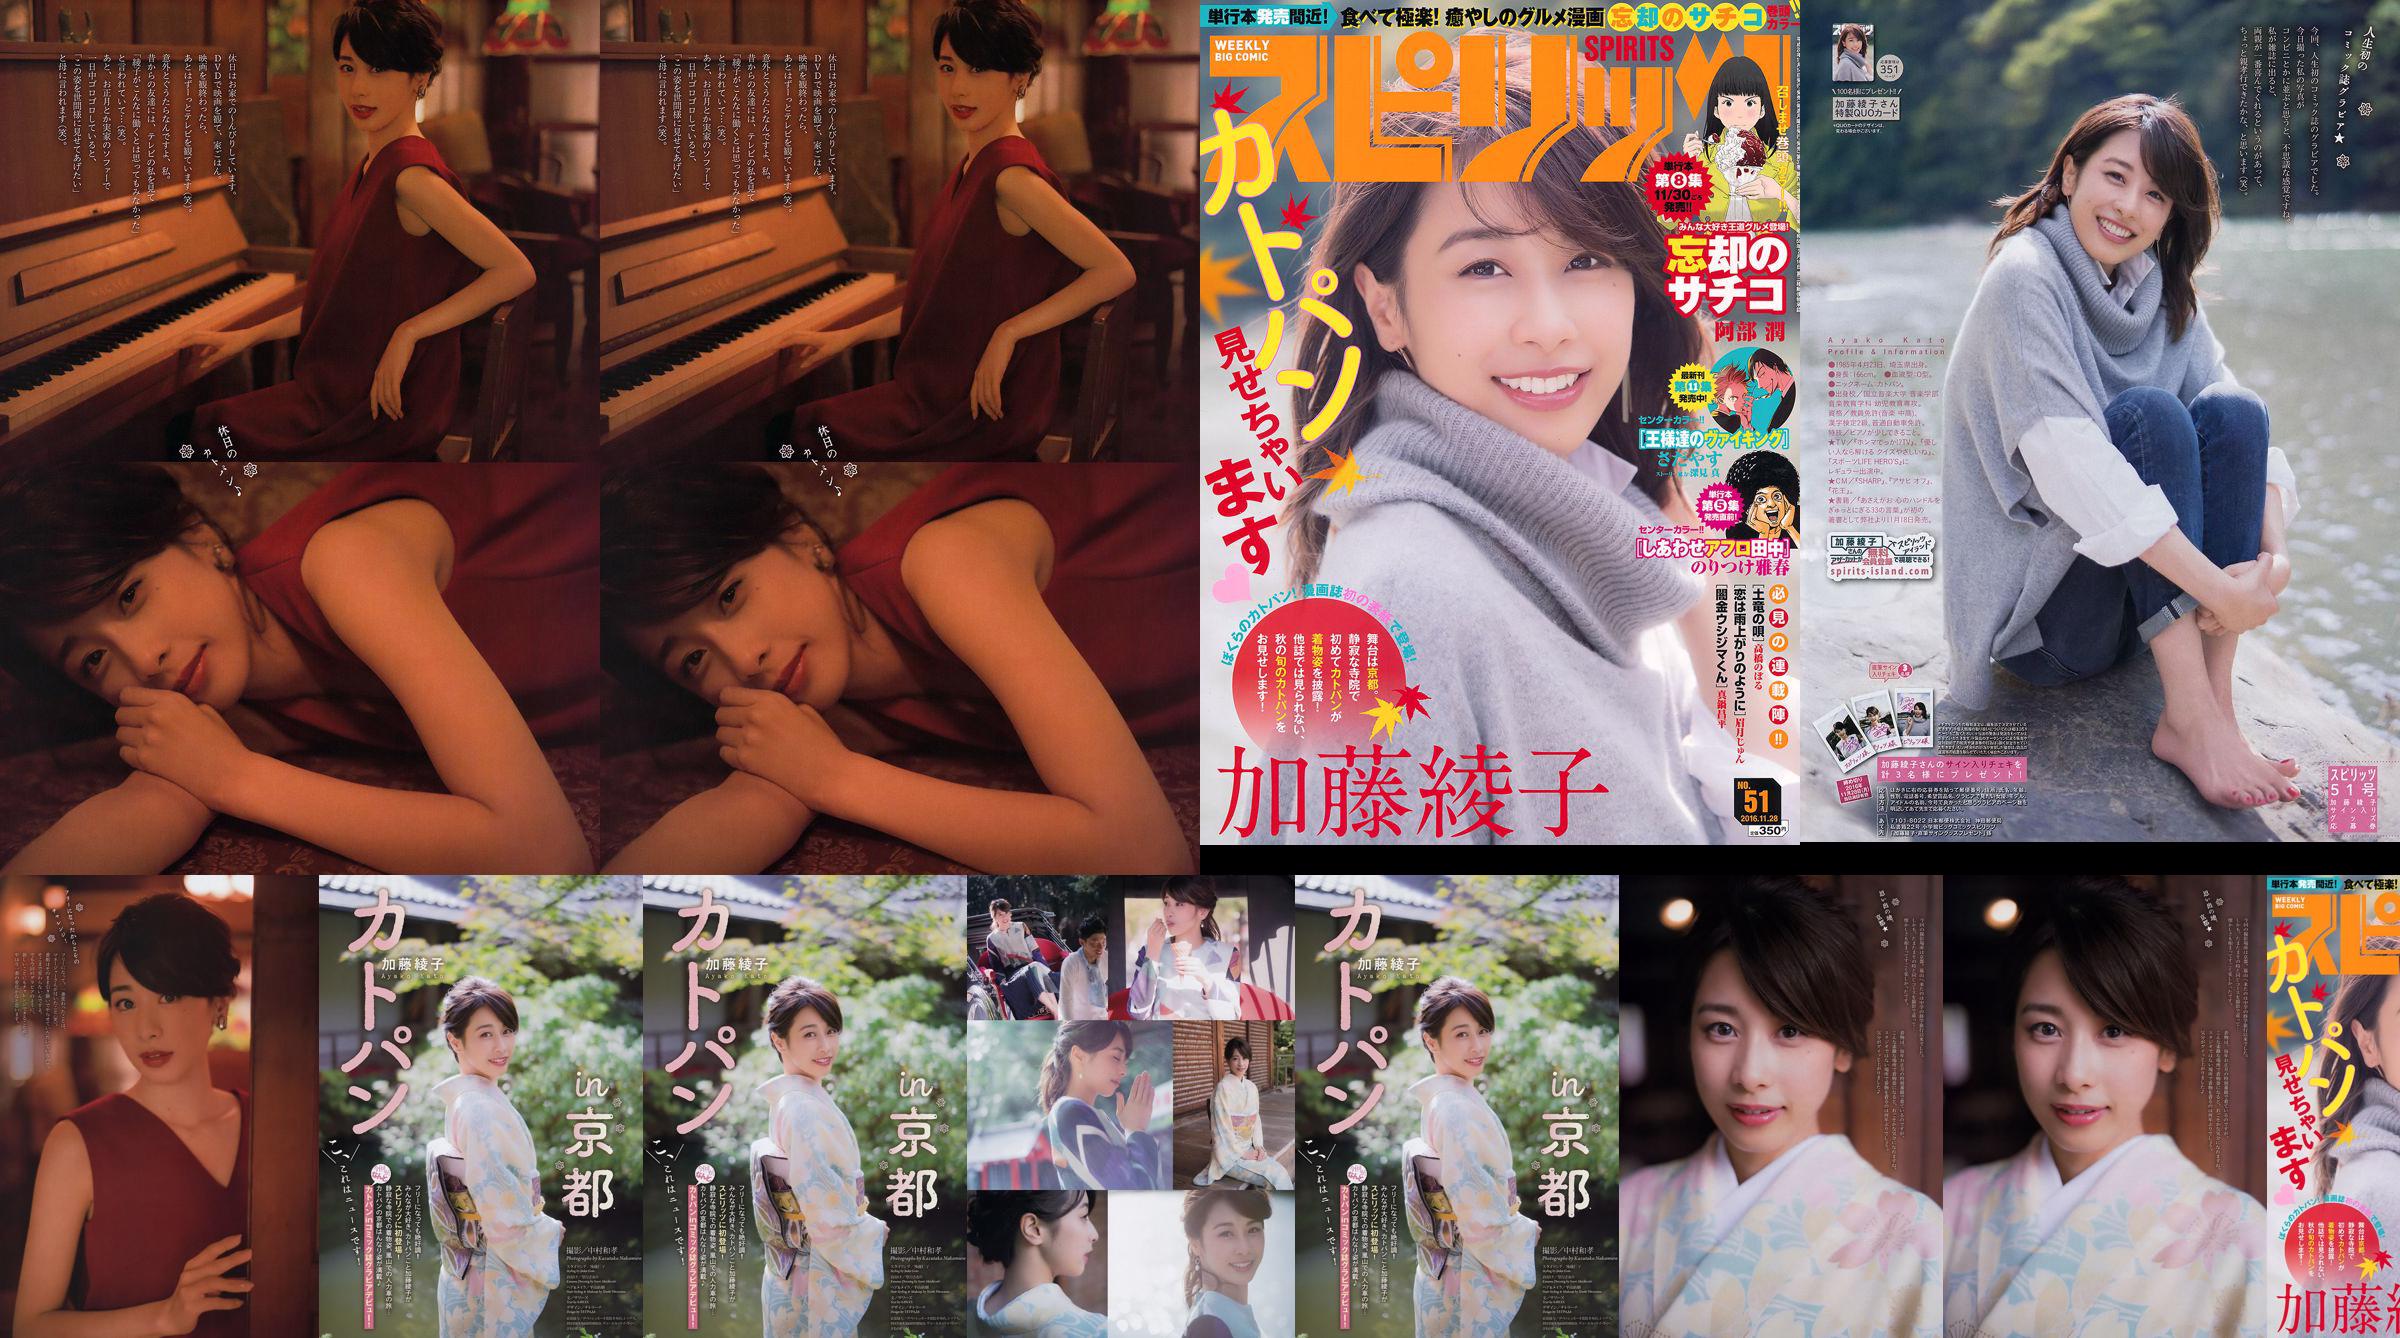 [Semangat Komik Besar Mingguan] Ayako Kato 2016 Majalah Foto No. 51 No.4fc017 Halaman 1